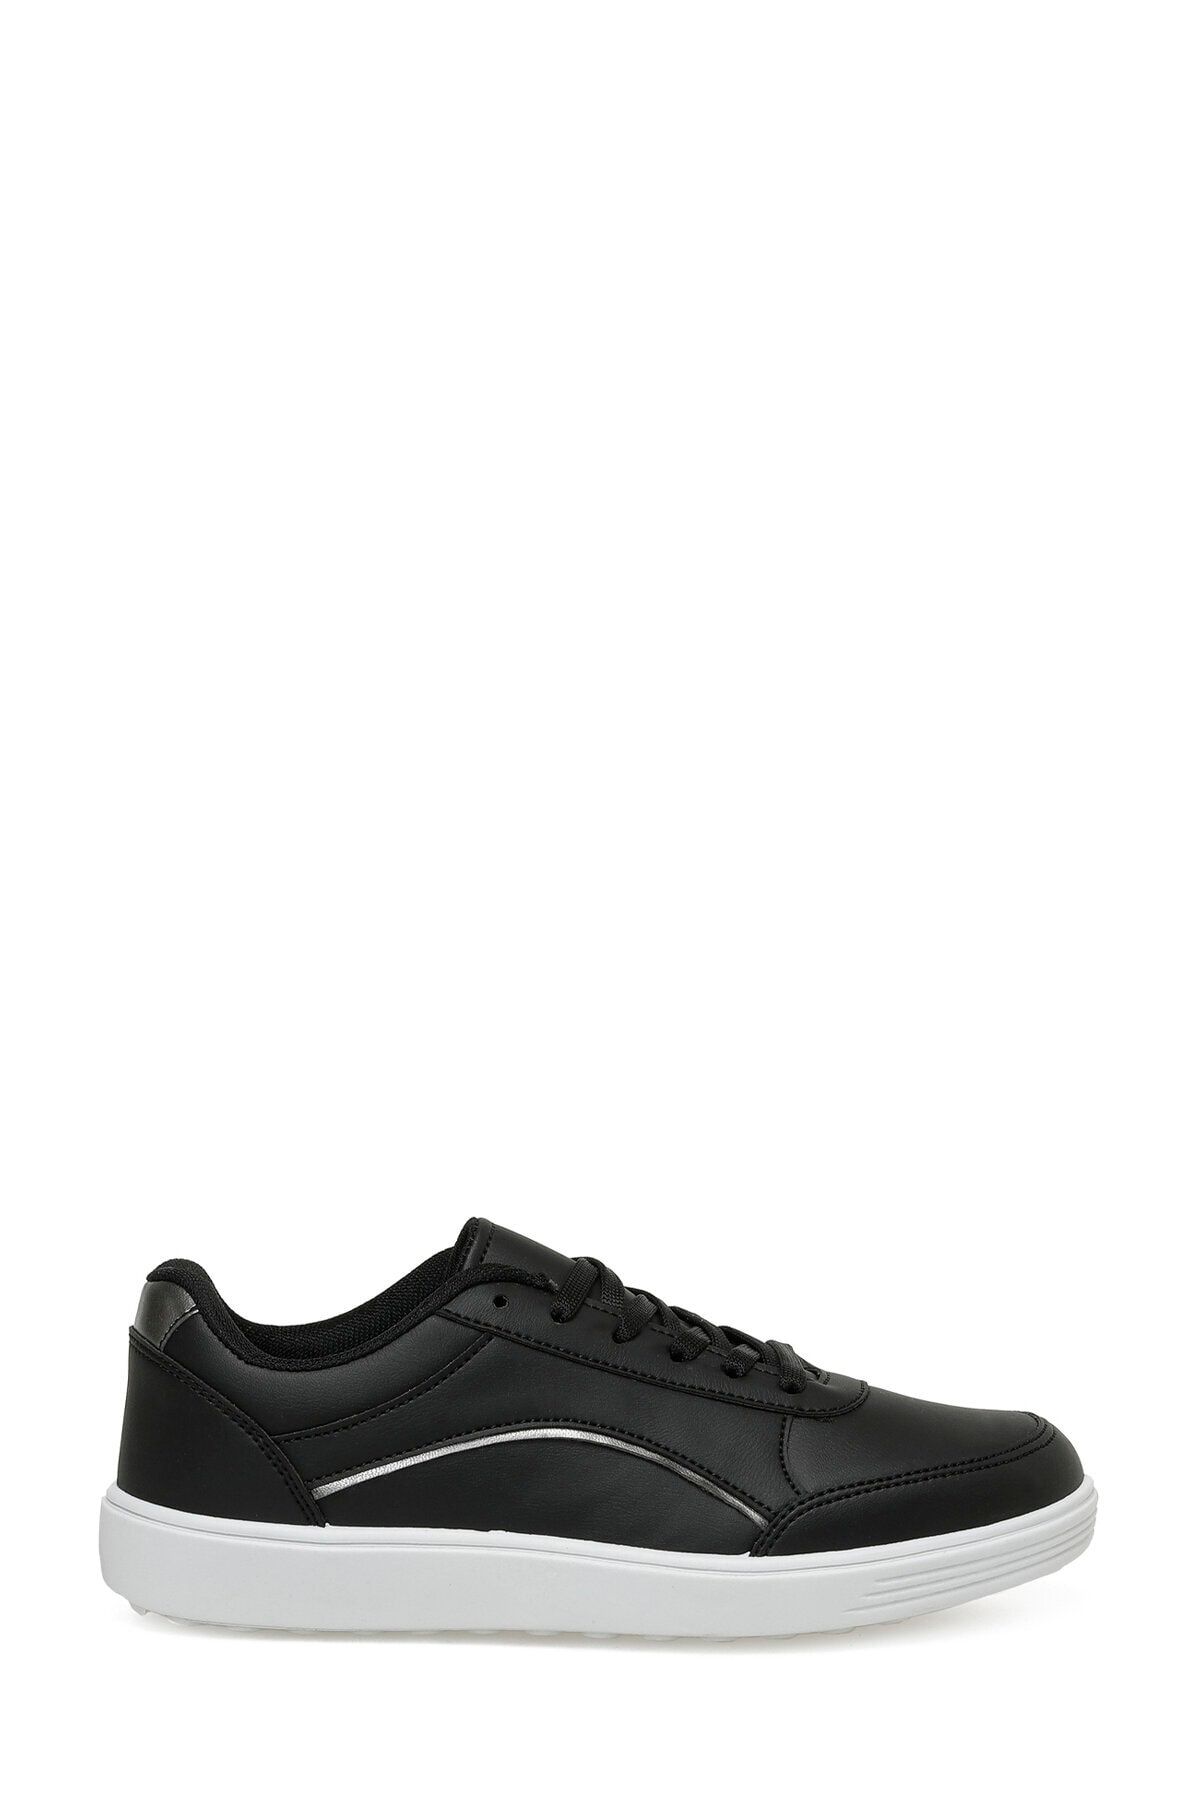 Torex Trx23s-022 3fx Siyah Kadın Sneaker